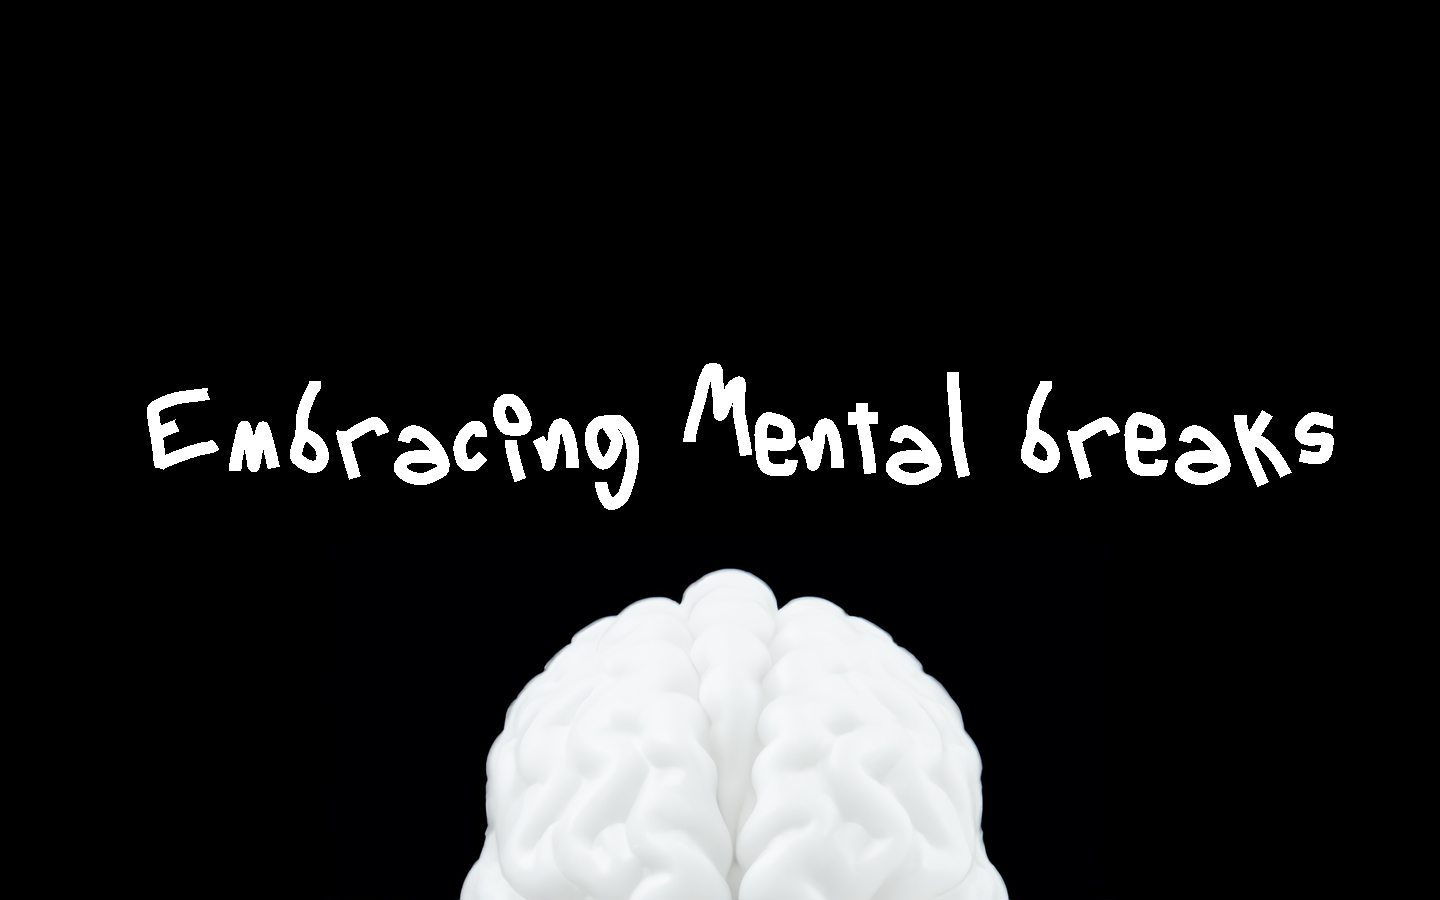 Embracing Mental Breaks